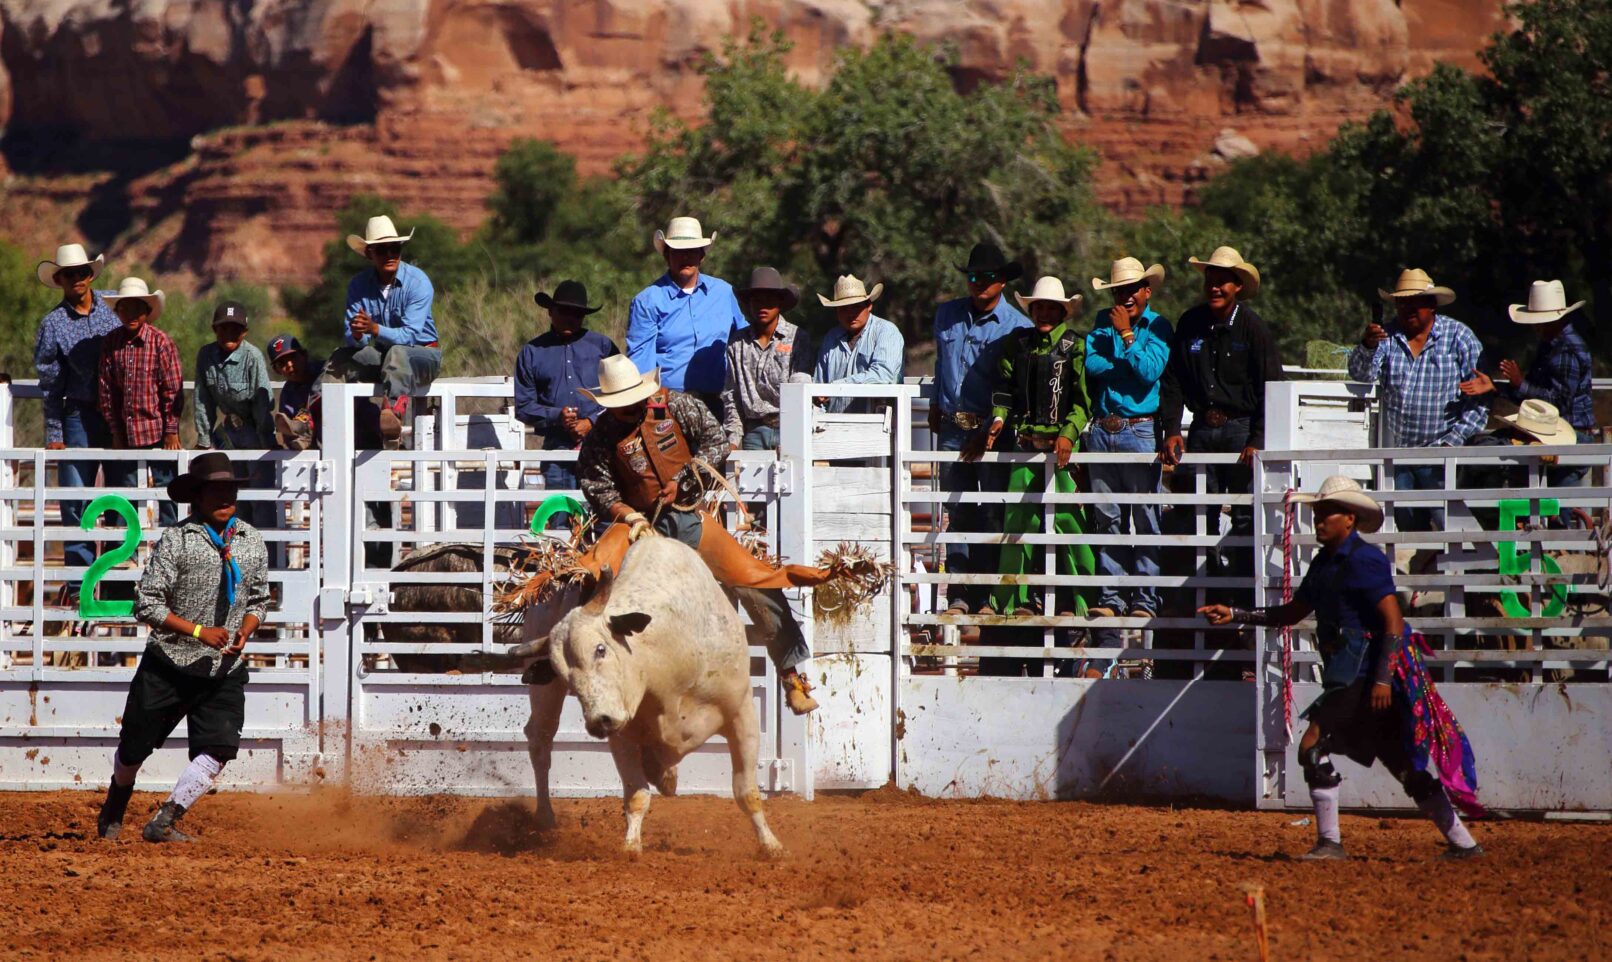 Riding a bull at a rodeo, Utah, USA